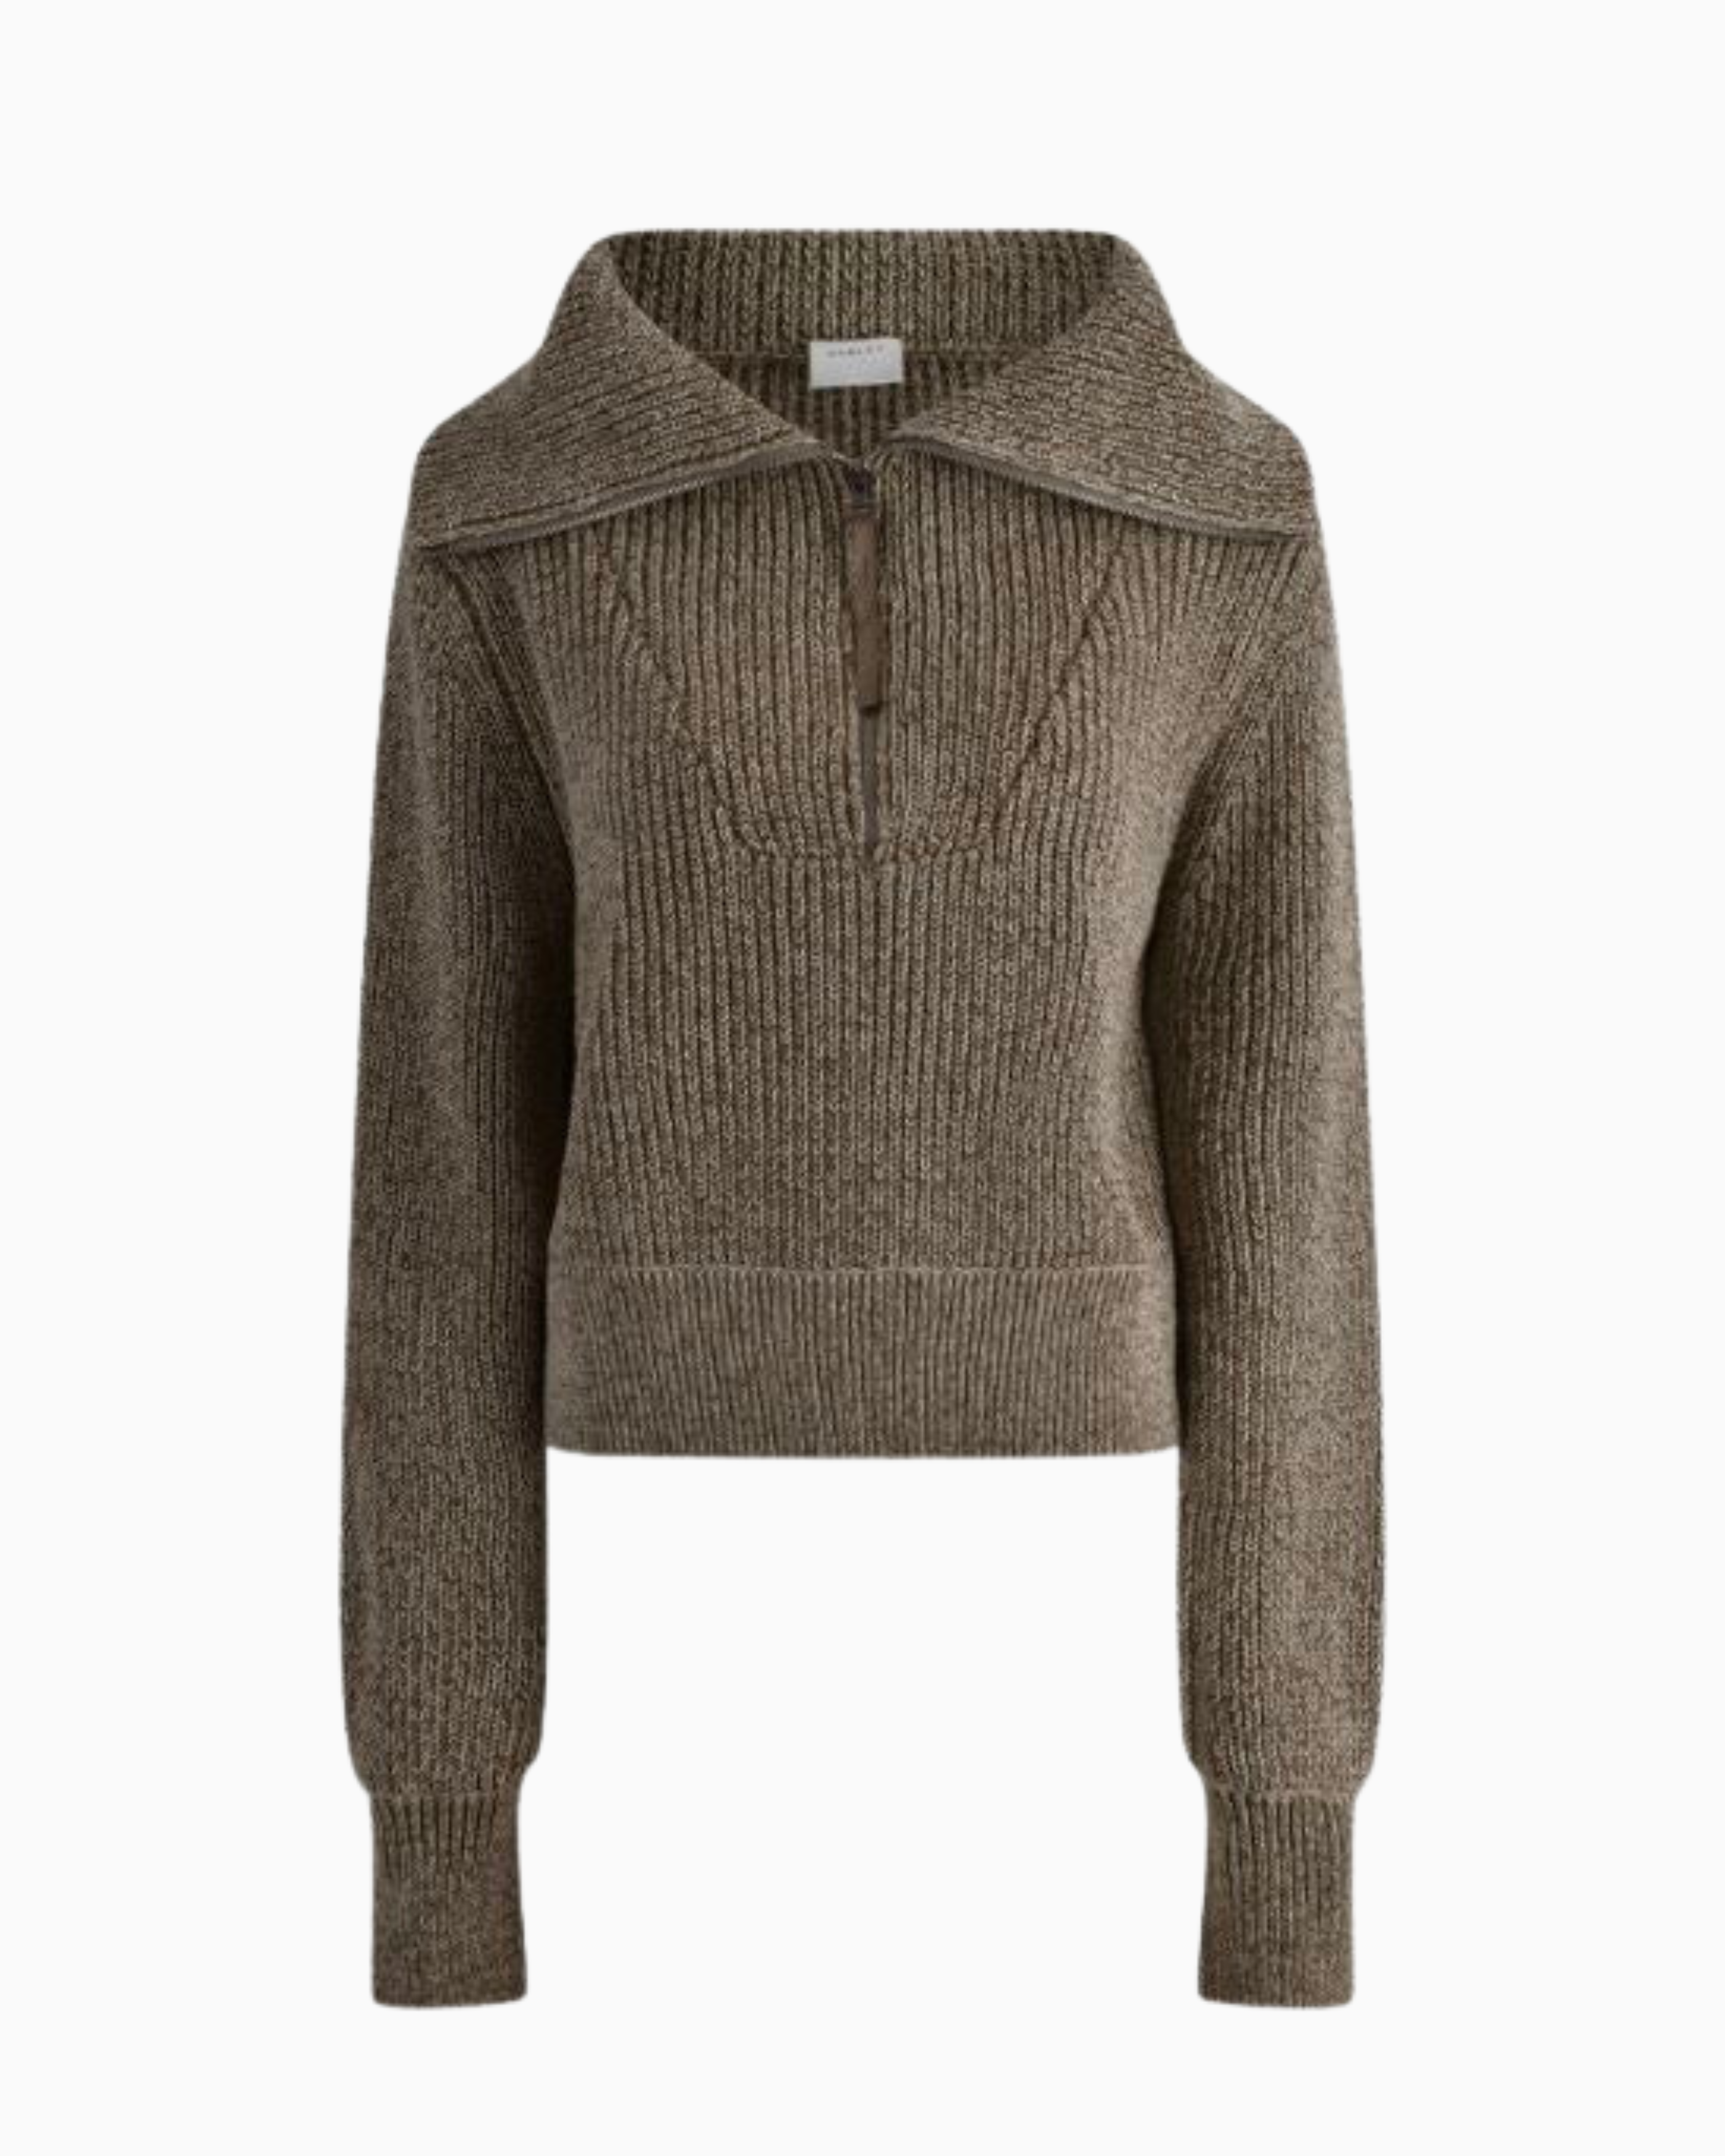 Varley Mentone Knit Sweatshirt in Dark Olive Speckle